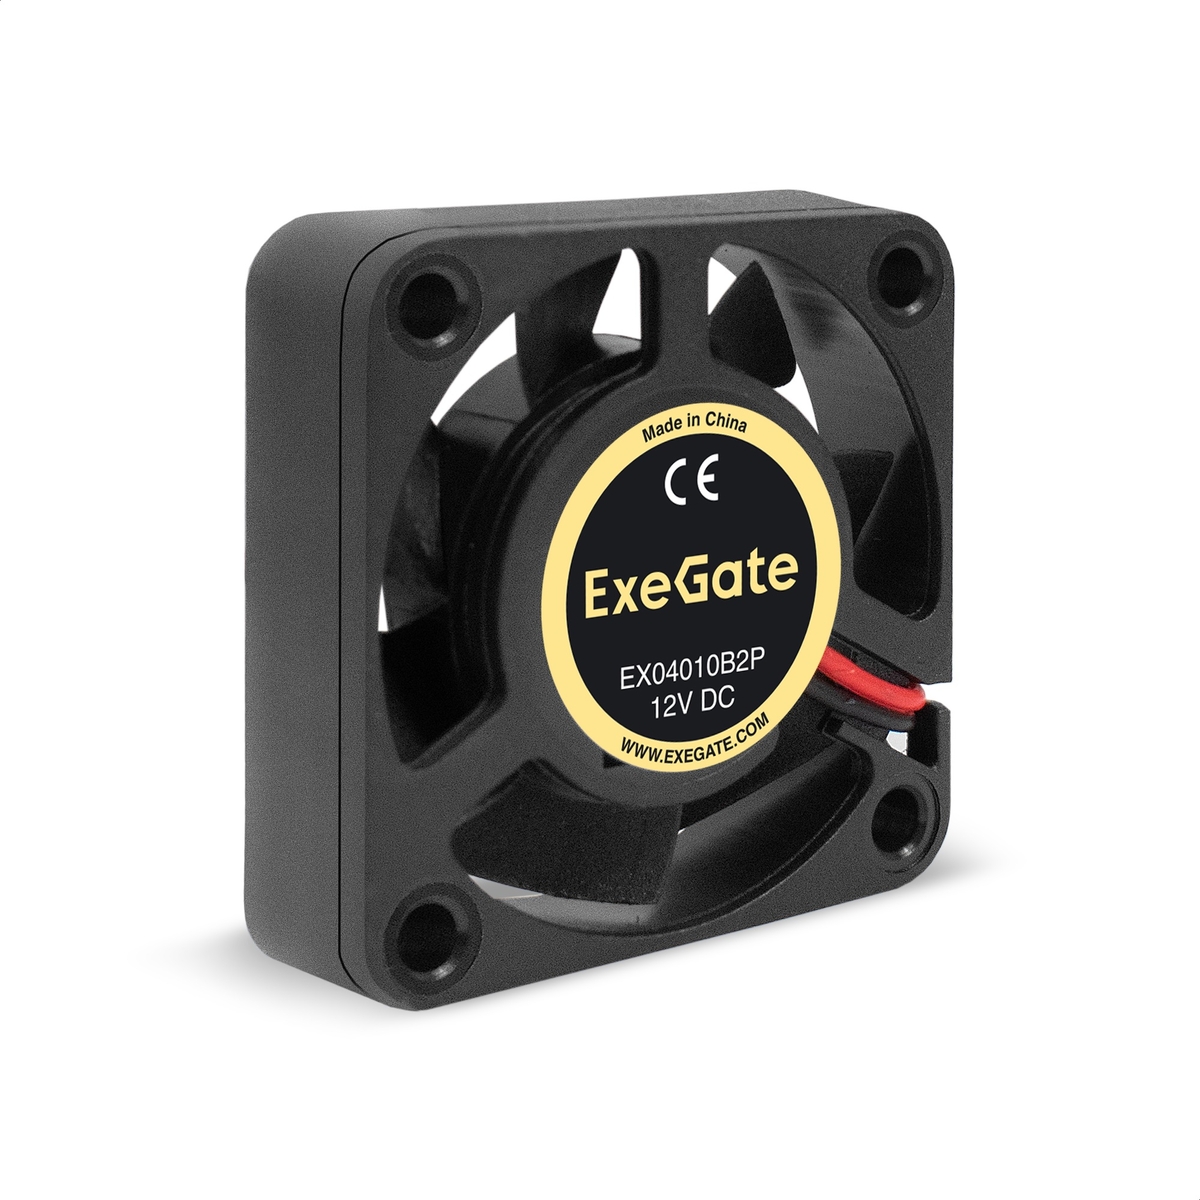  ExeGate EX04010B2P